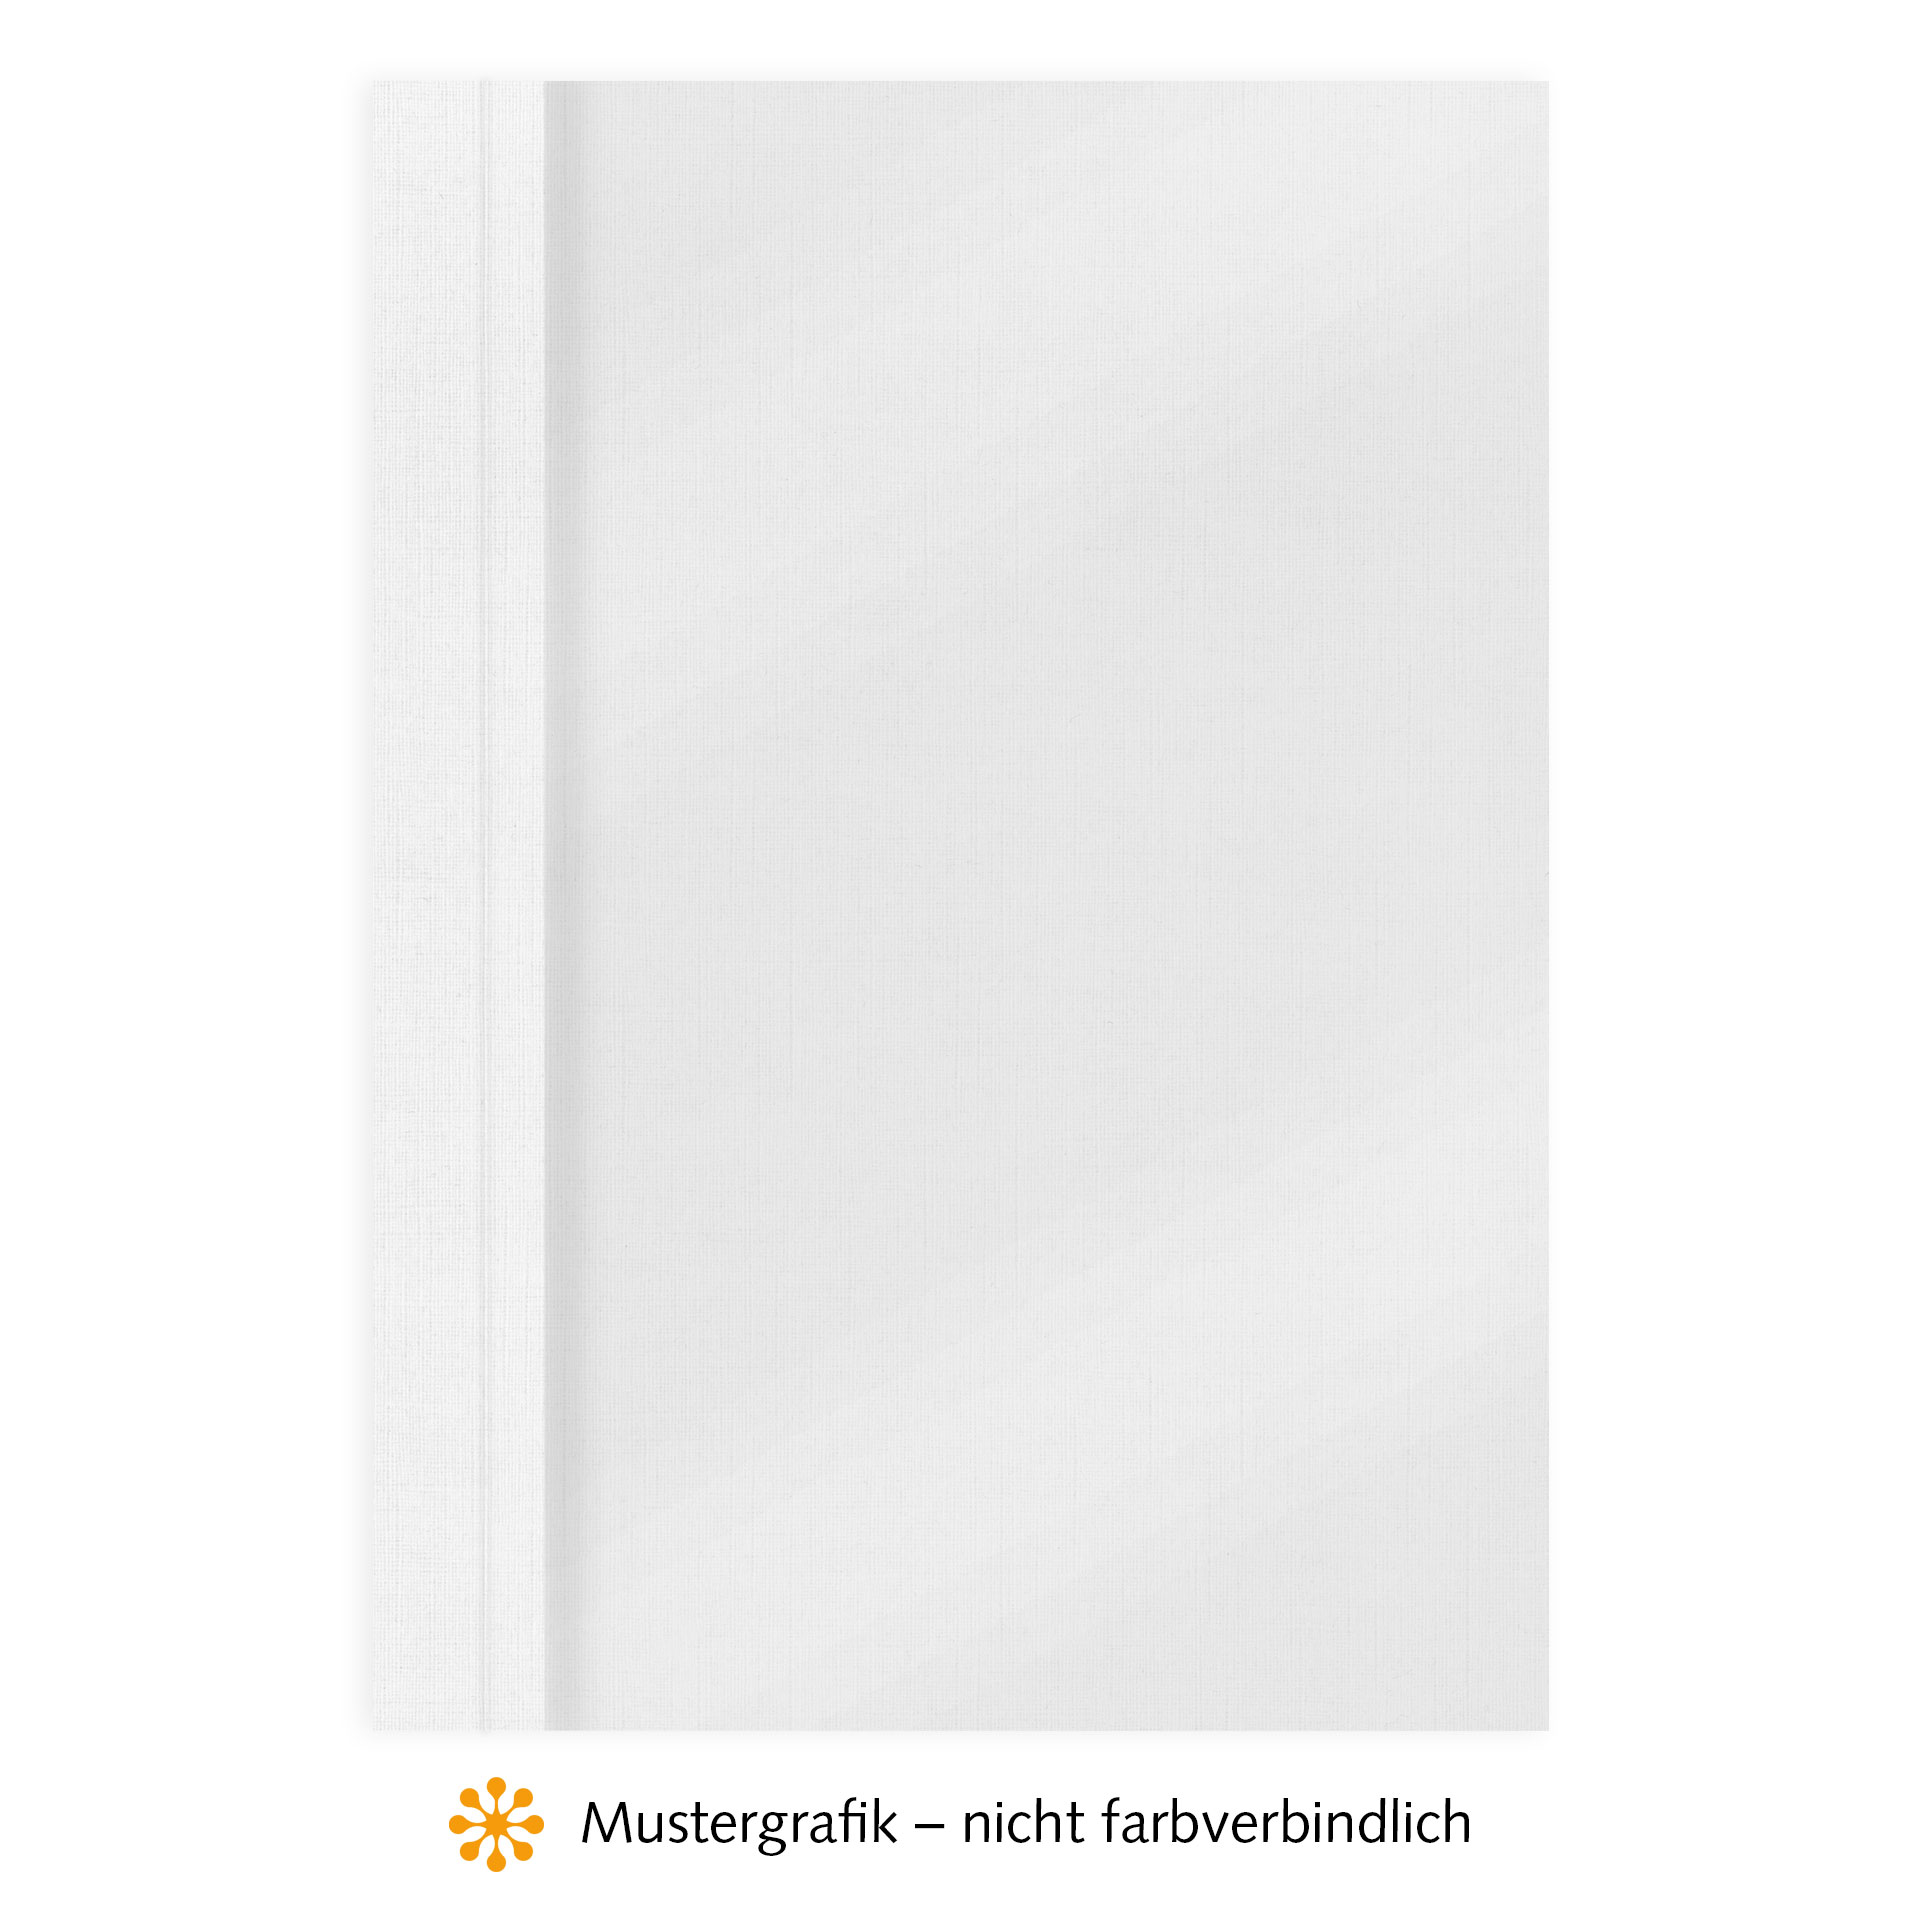 Ösenmappen DUO Cover, Vorderseite Folie MATT transparent, Rückseite Karton Leinen, Weiß, 8 mm, 71 bis 80 Blatt